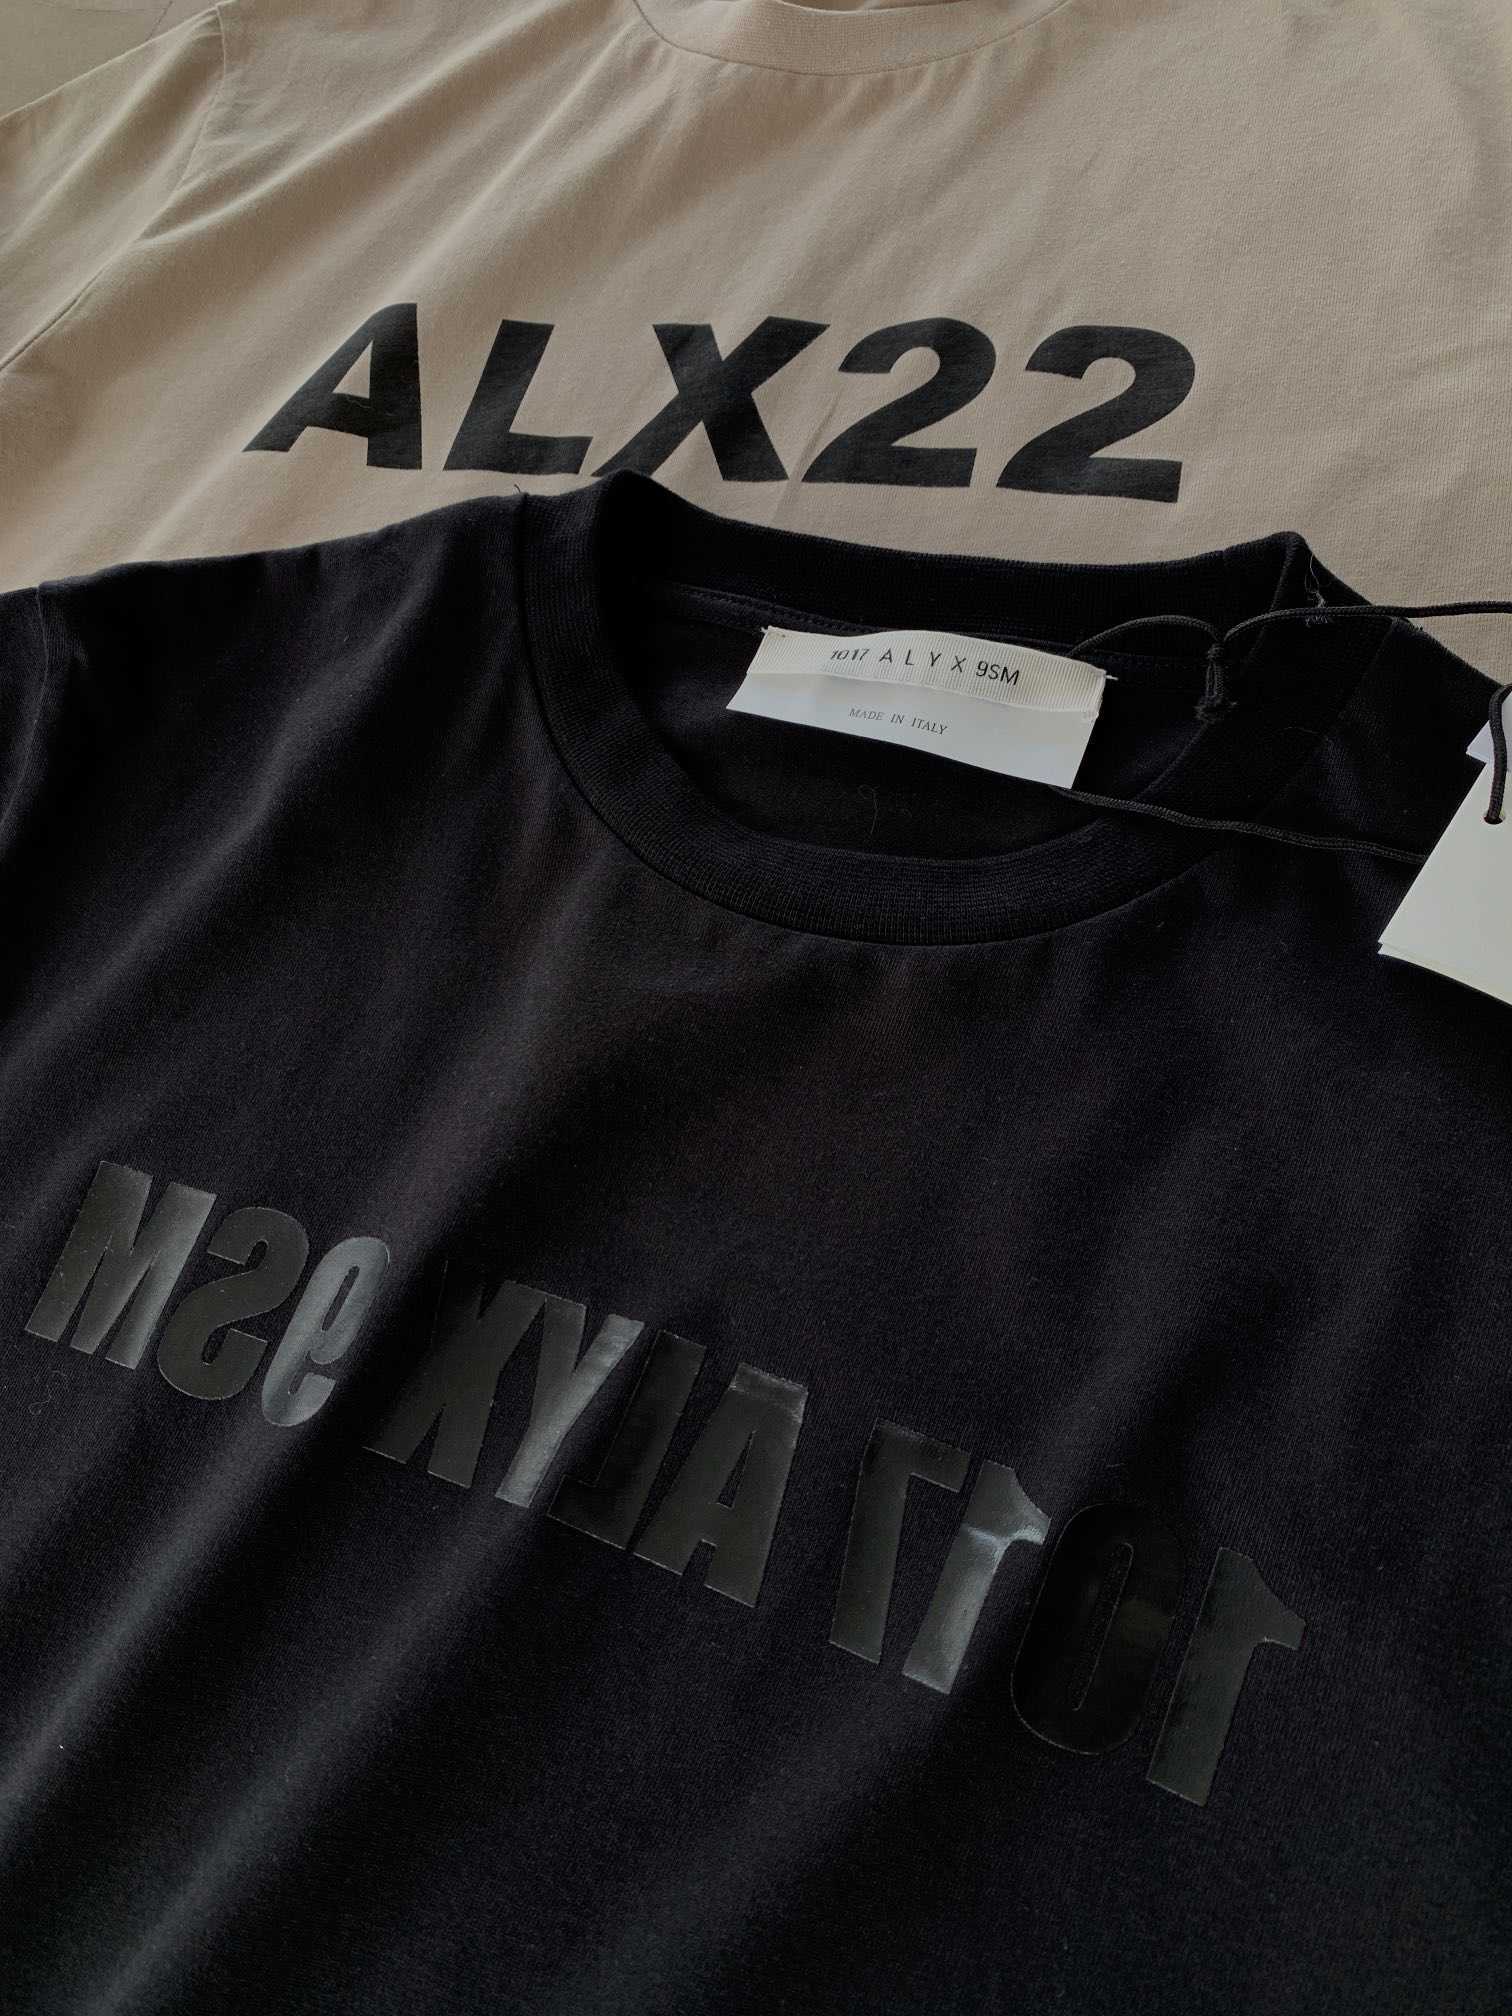 Мужские футболки Alyx Alx22 Футболка 2022 Мужчины Женщины 1 1 Высококачественный черный марк.